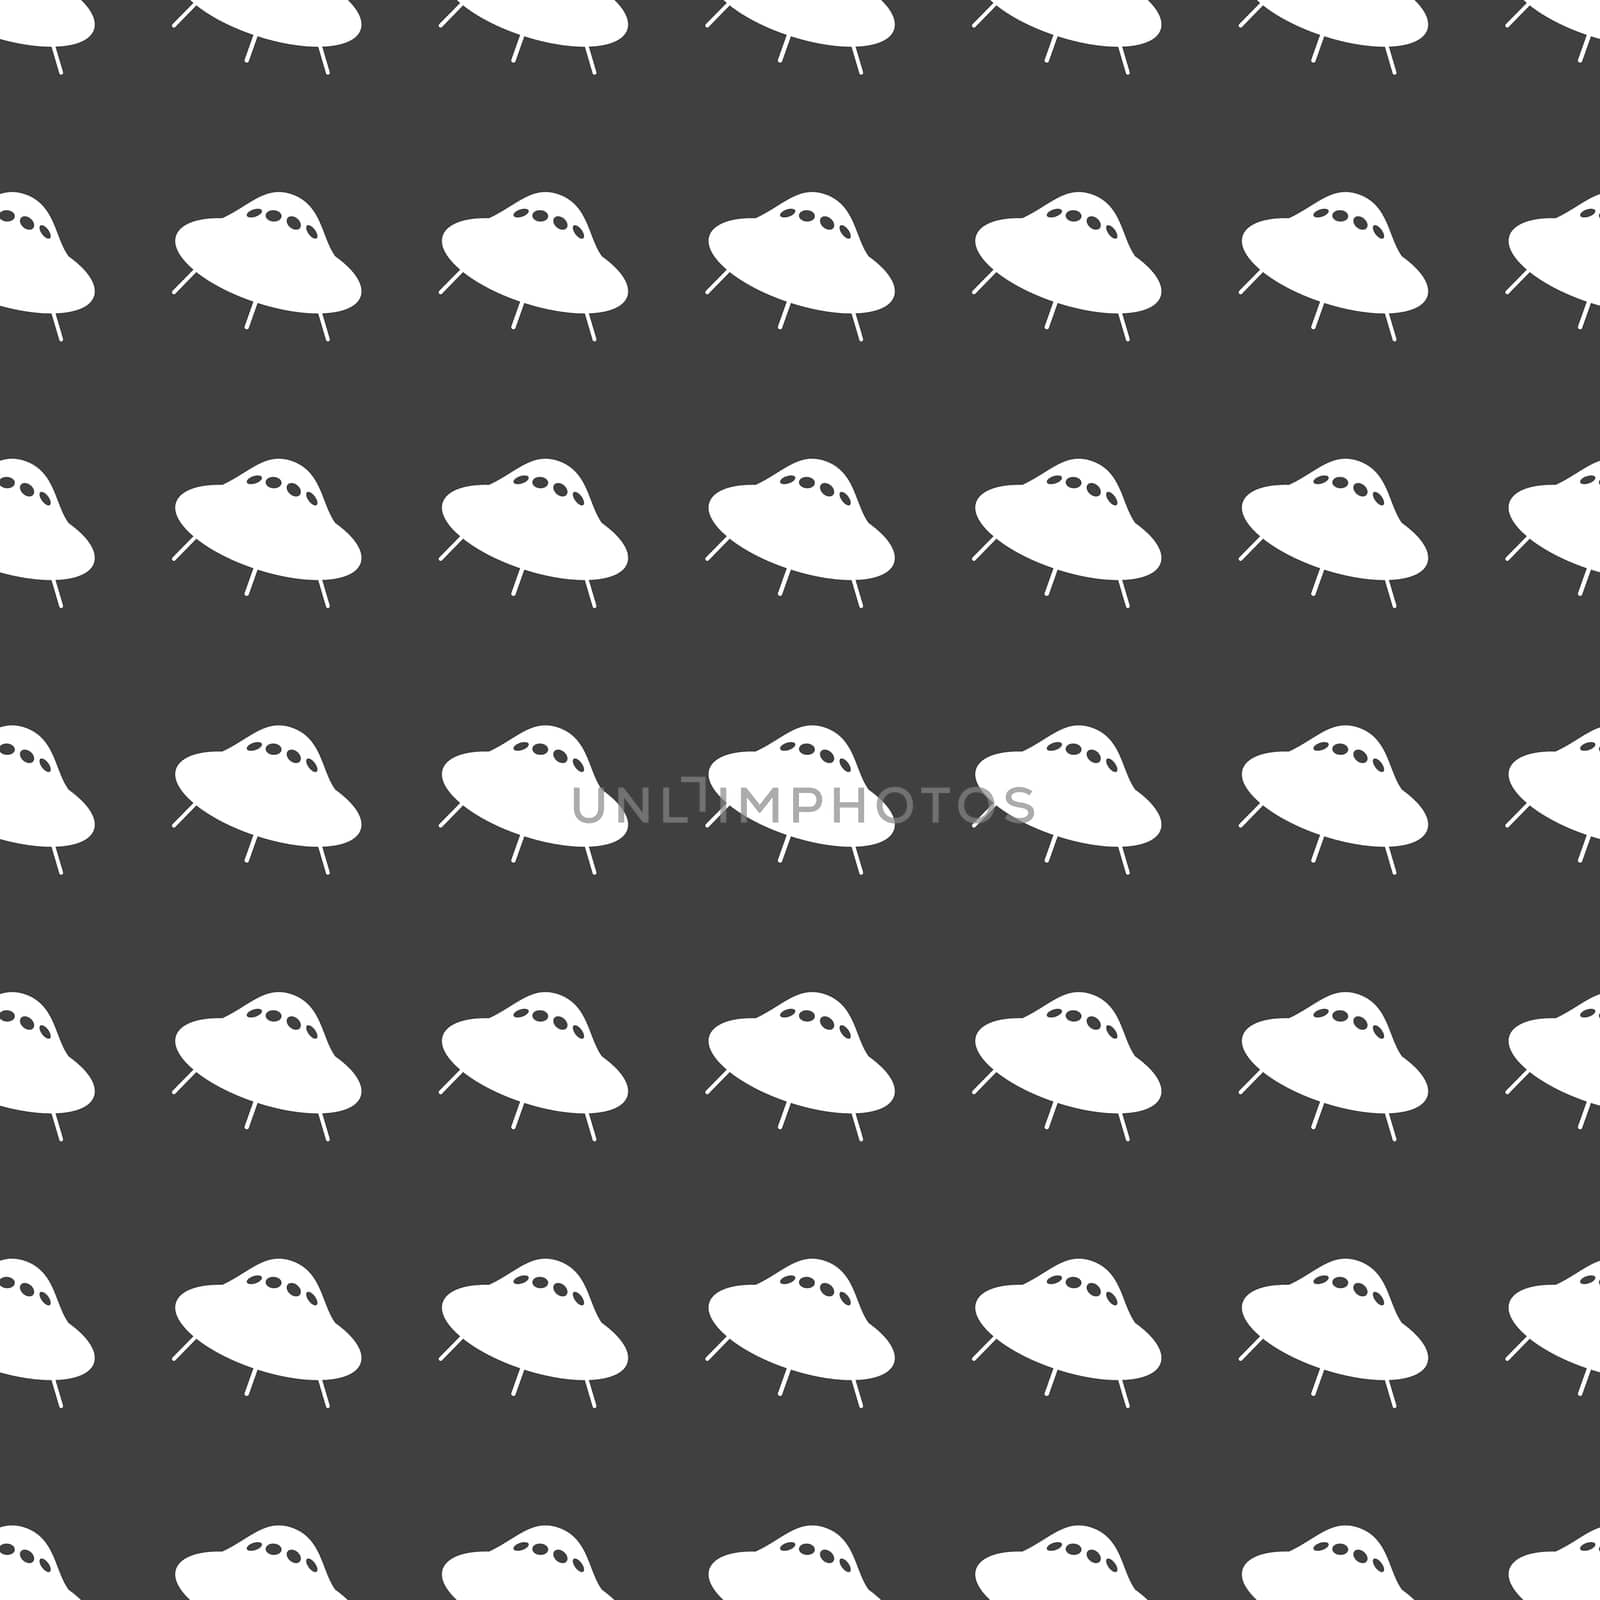 UFO web icon. flat design. Seamless gray pattern. by serhii_lohvyniuk